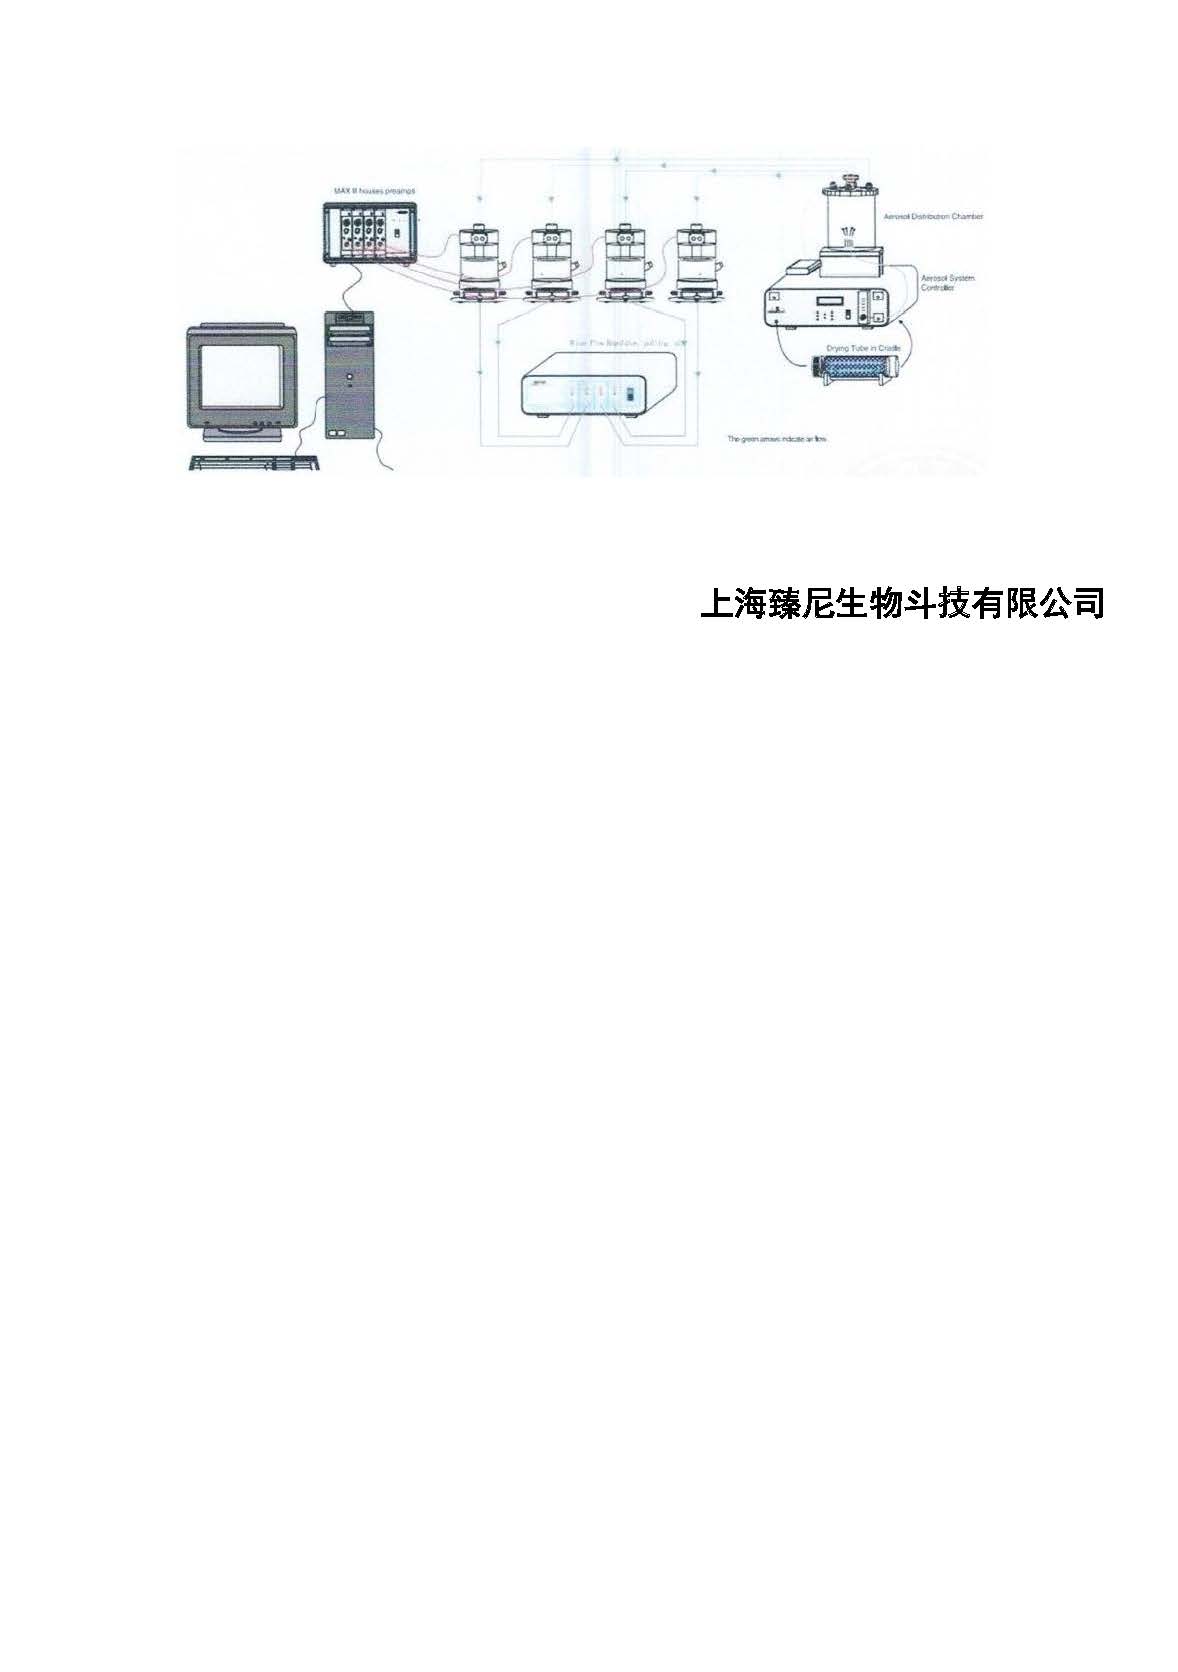 2.臻尼生物肺功能研究产品彩页_页面_2.jpg